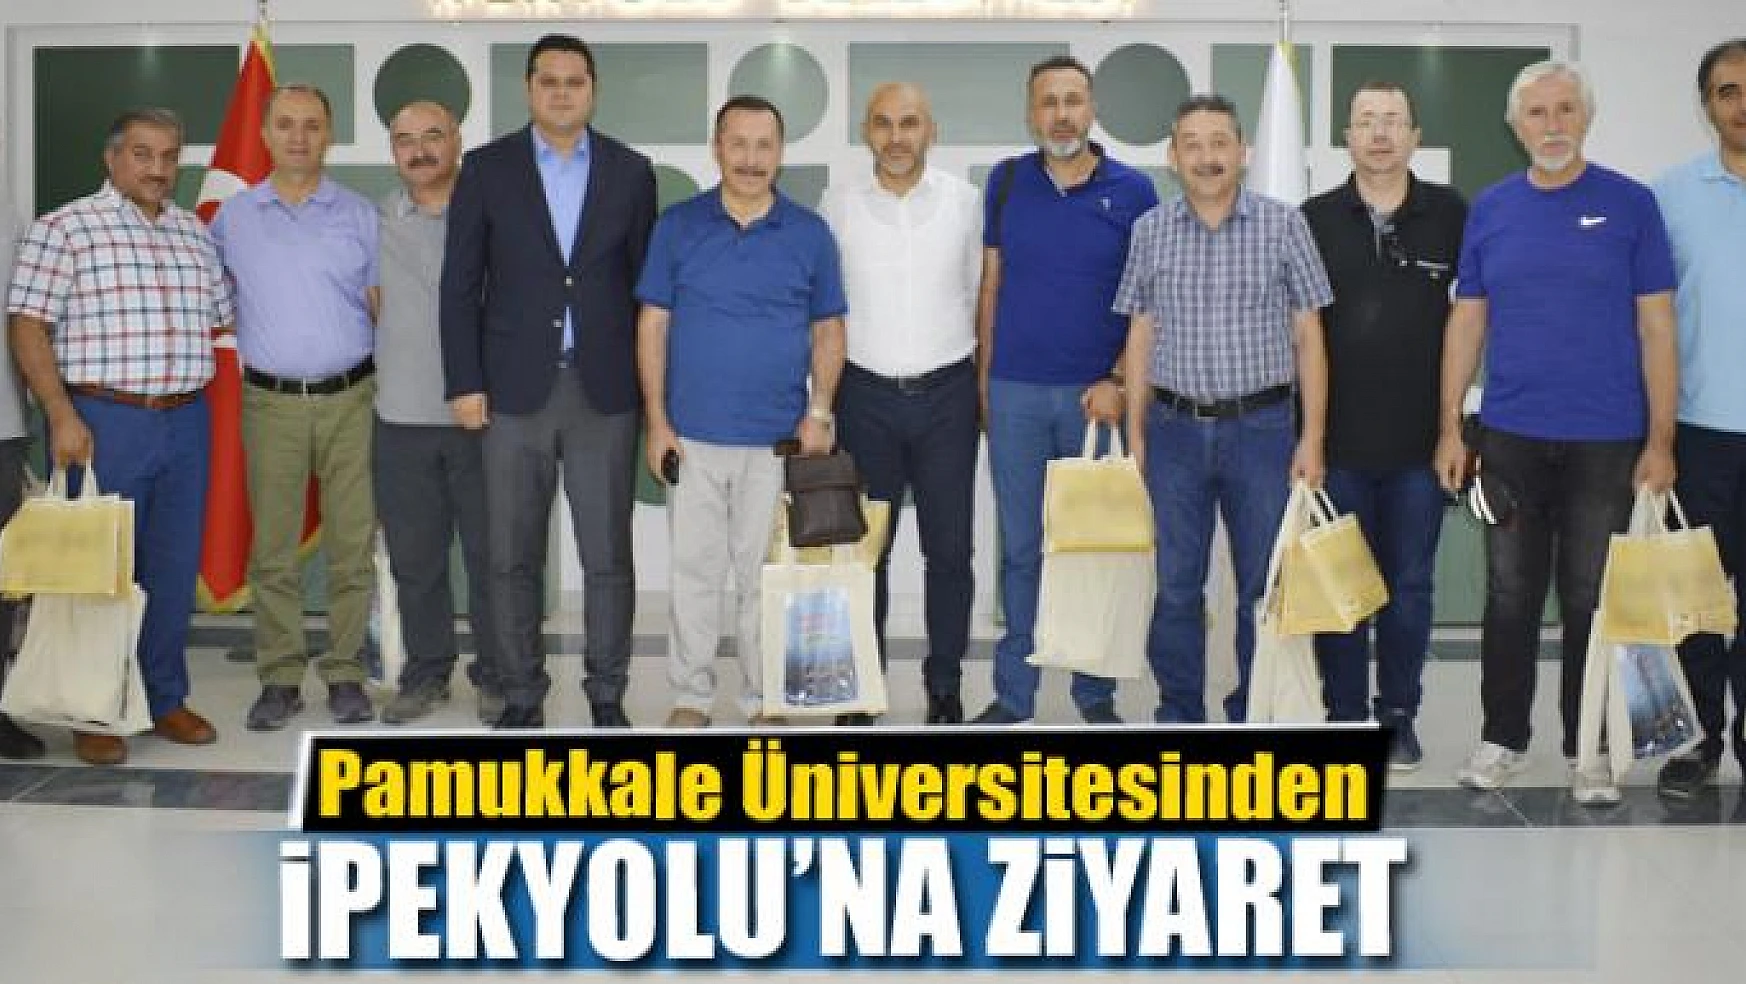 Pamukkale Üniversitesinden İpekyolu'na ziyaret